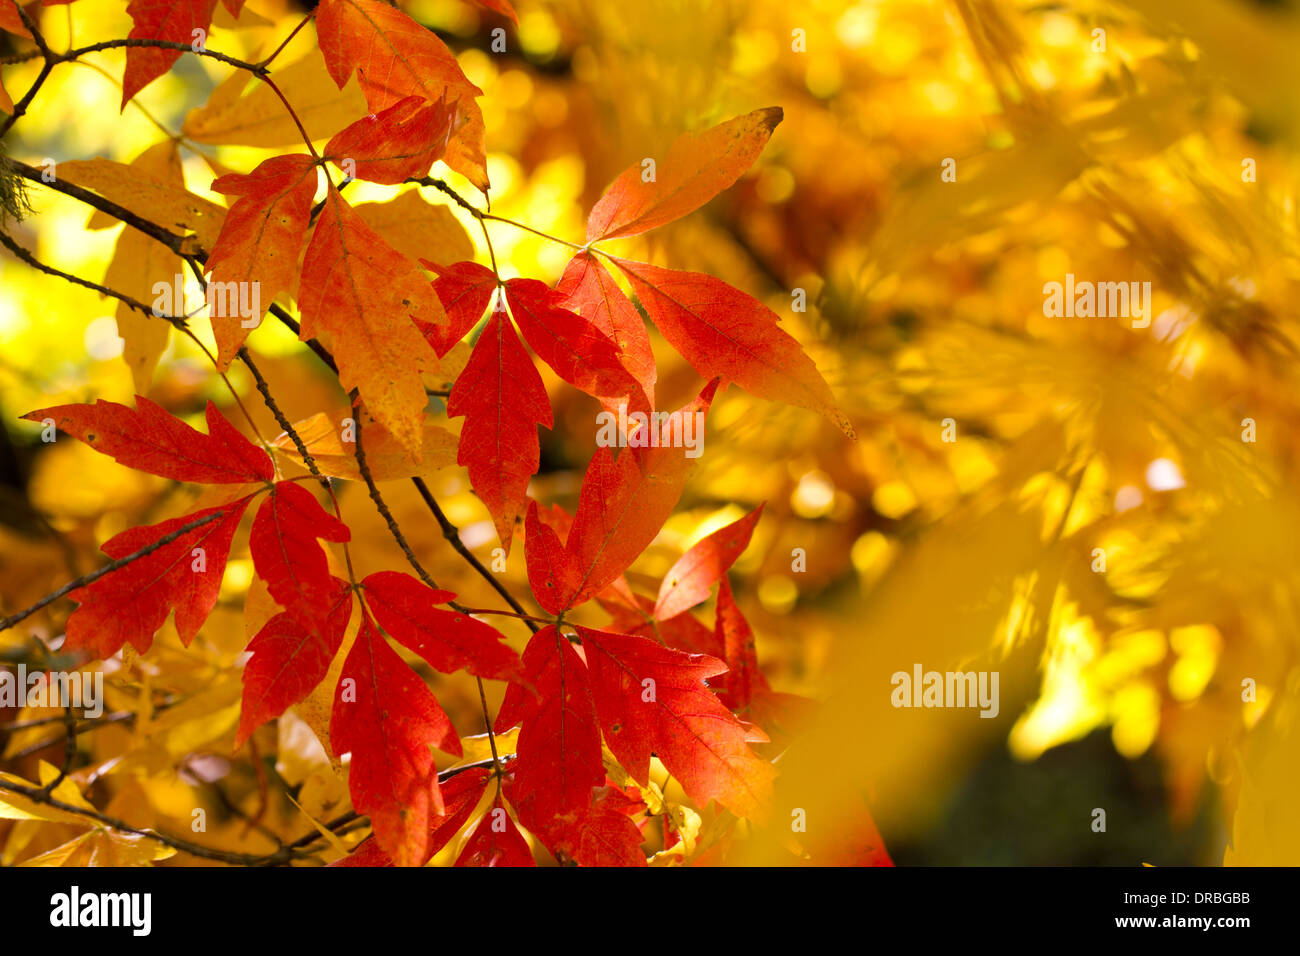 Trois feuilles érable (Acer trifolium) feuilles sur un arbre en automne. Herefordshire, en Angleterre. Octobre. Banque D'Images